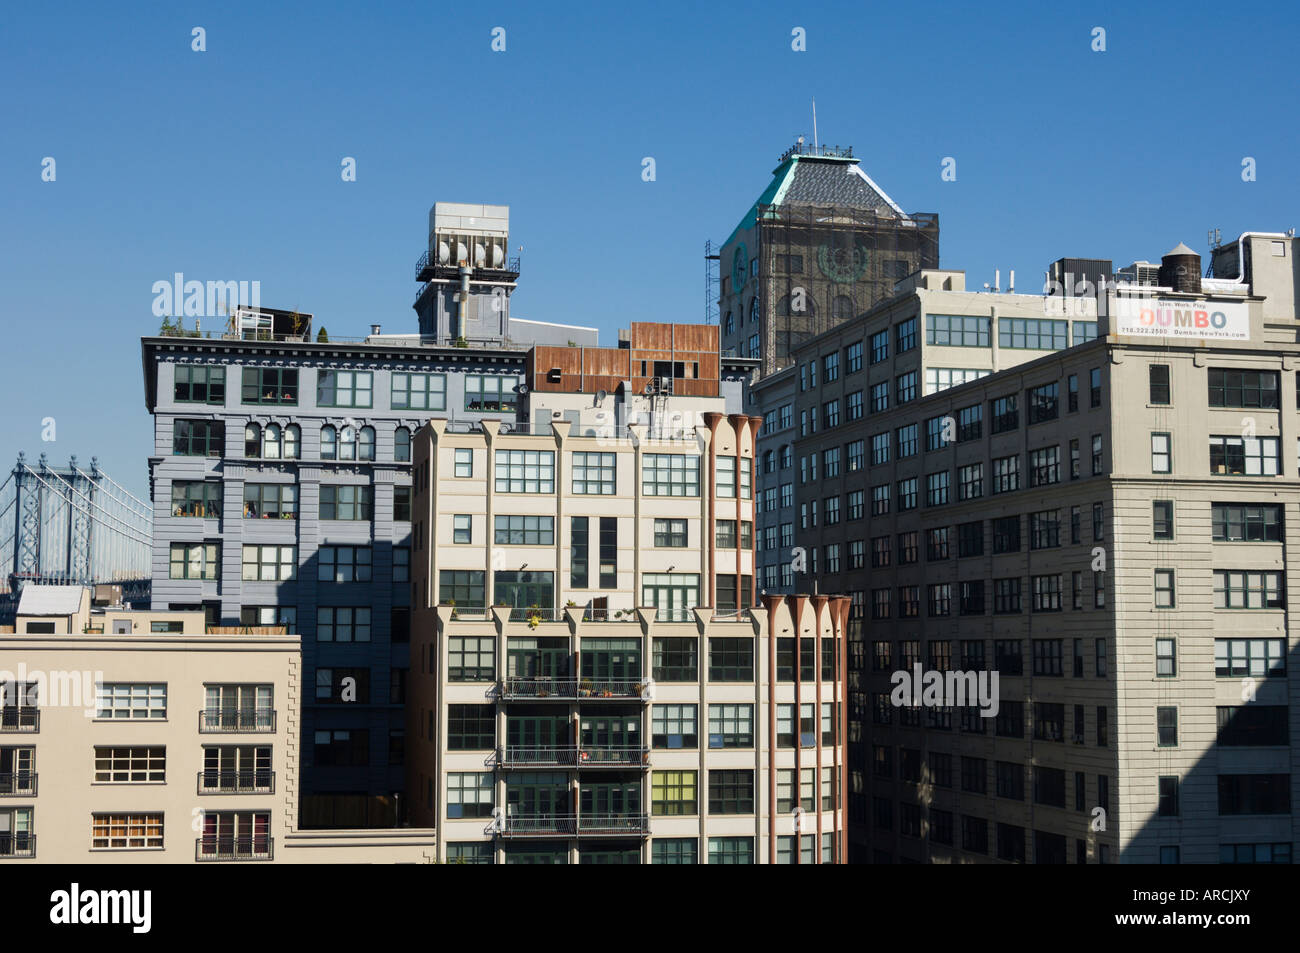 Les vieux bâtiments réaménagés dans le domaine de DUMBO Brooklyn, New York City, New York, États-Unis d'Amérique, Amérique du Nord Banque D'Images